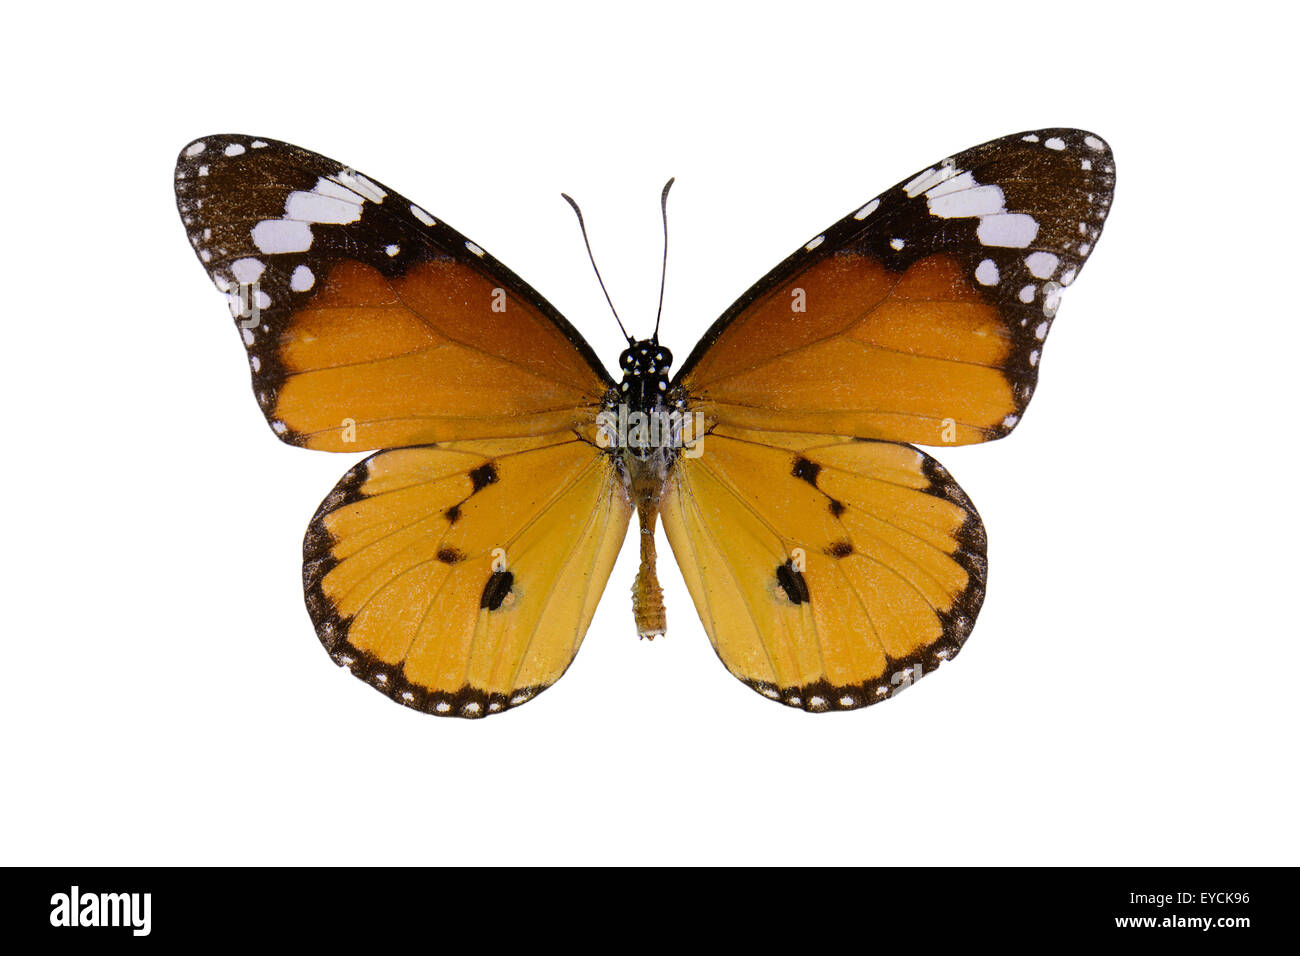 Plain Tiger Schmetterling (Danaus Wachen) in Skalenfarben isoliert auf weiss Stockfoto